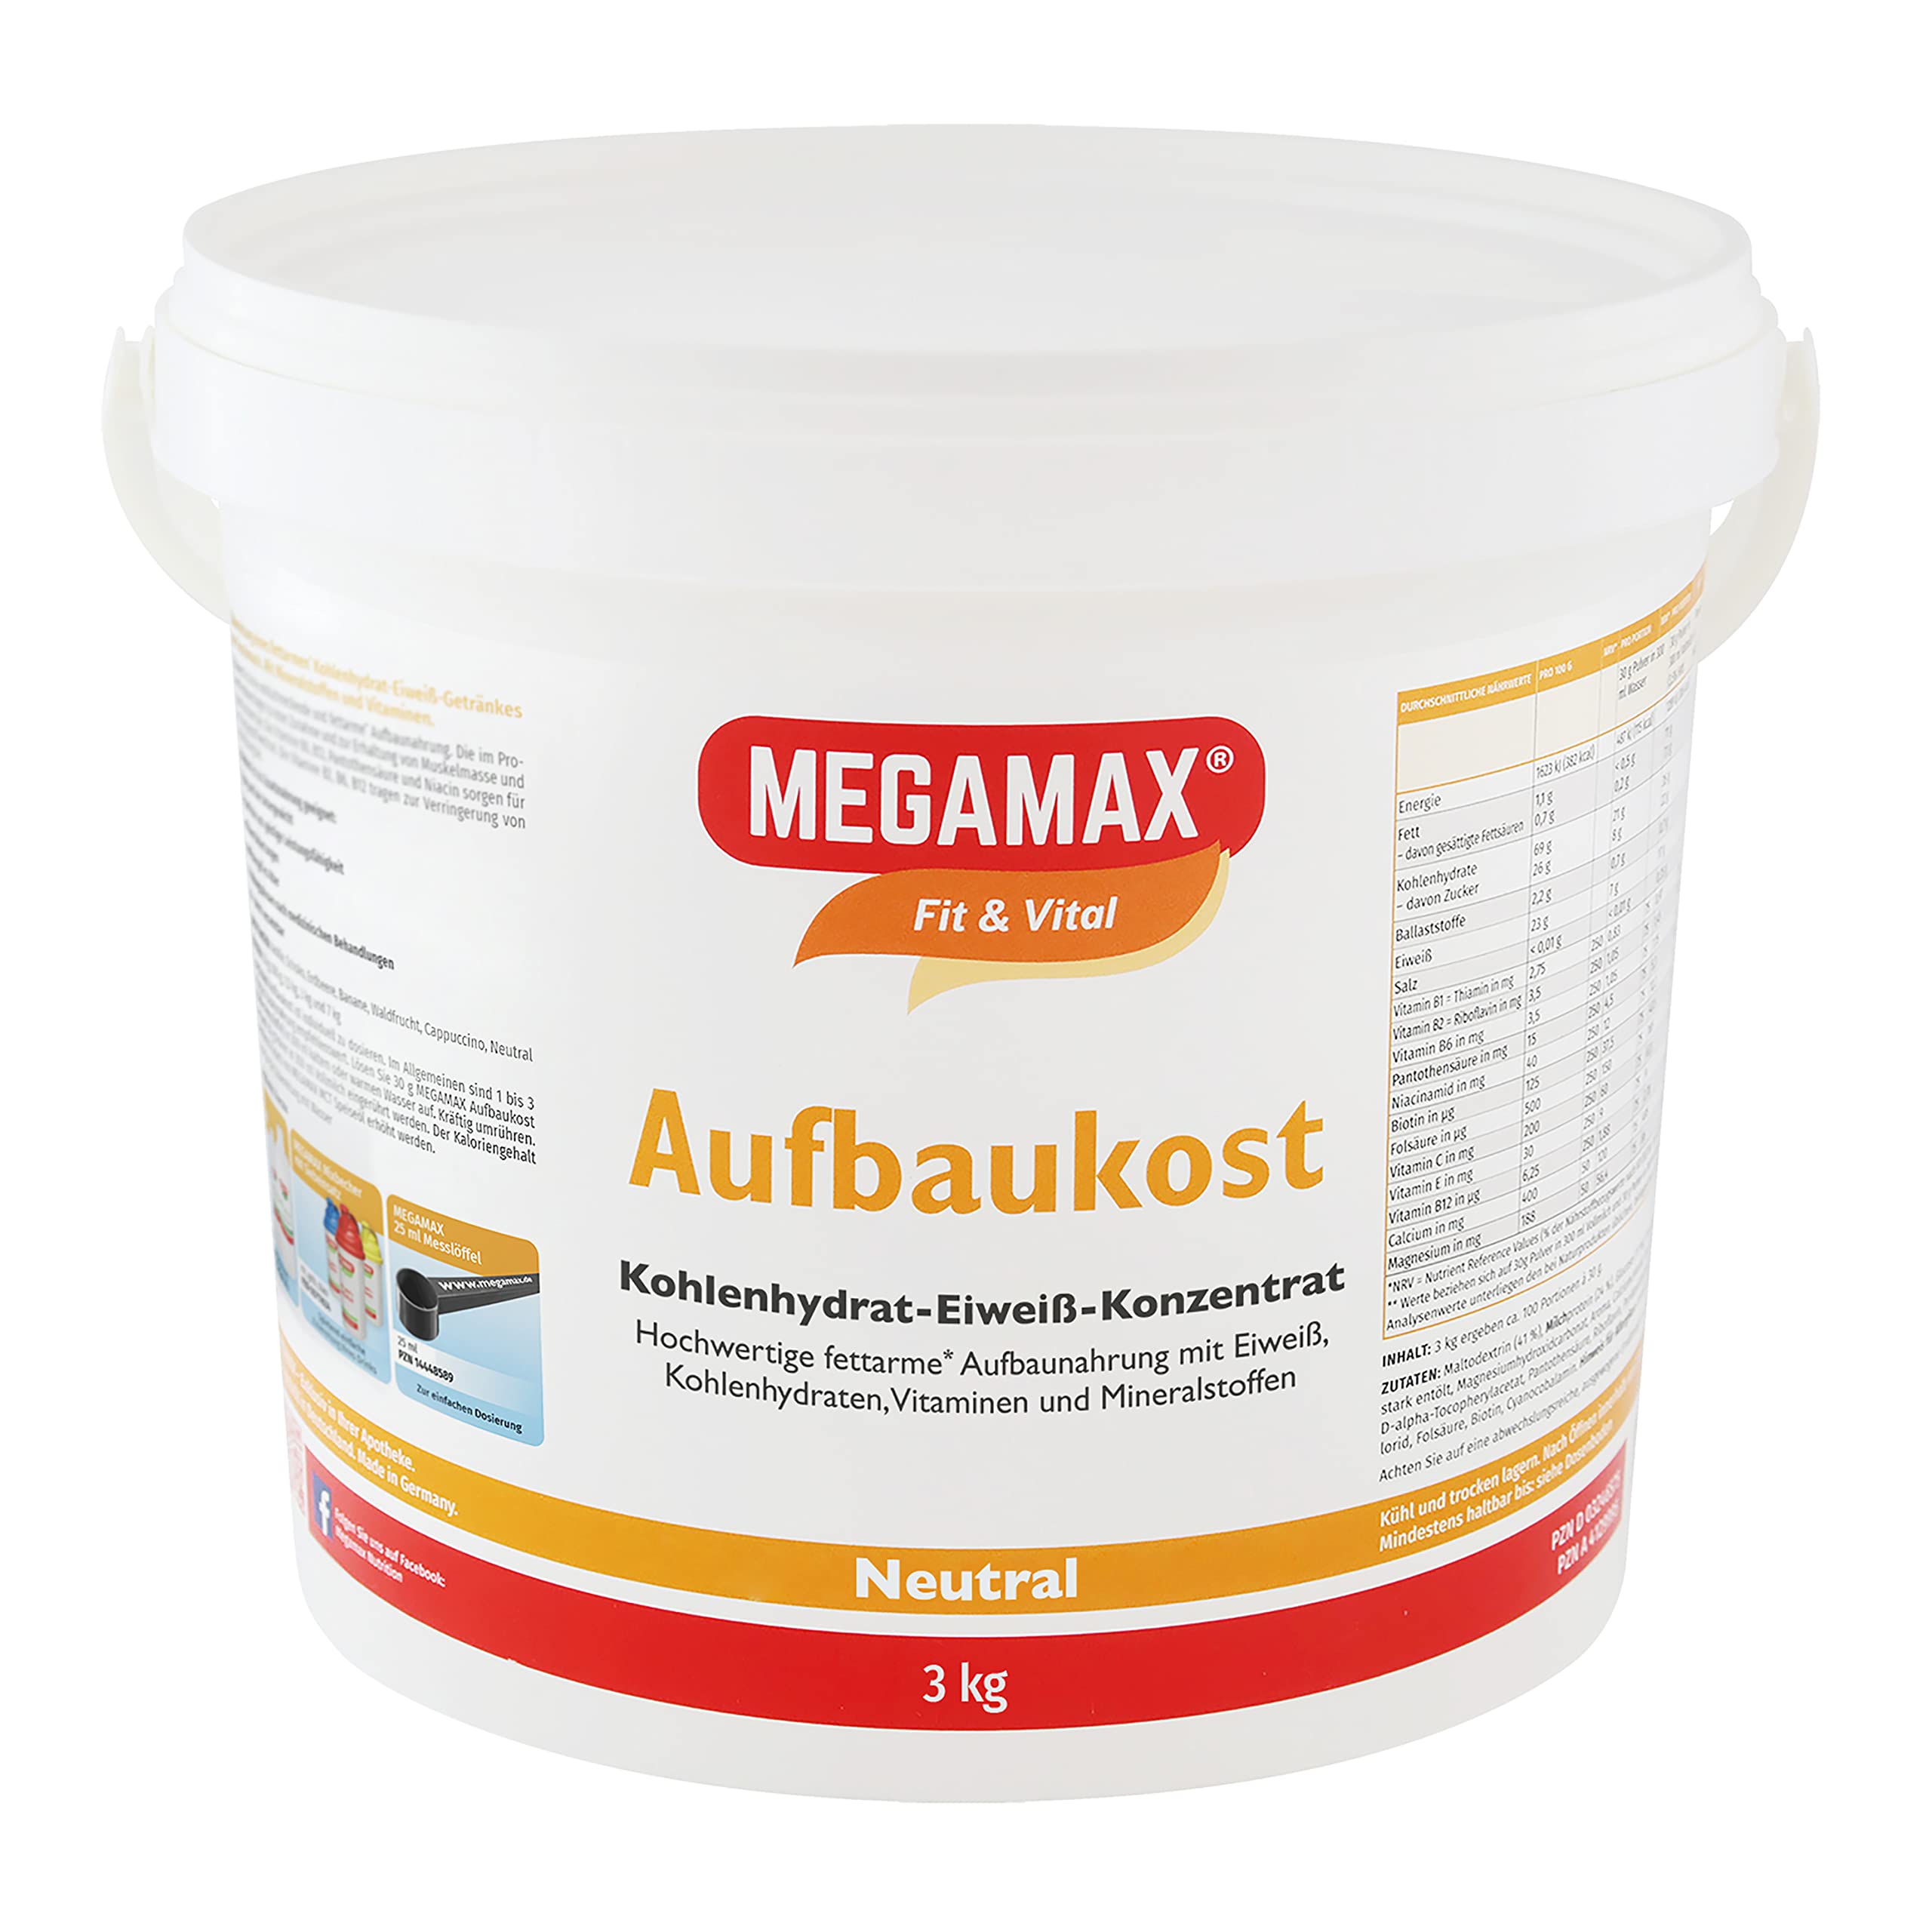 Megamax Aufbaukost 3 kg Neutral Ideal zur Kräftigung und bei Untergewicht - Proteinpulver zur Zubereitung eines fettarmen Kohlenhydrat-Eiweiß-Getränkes für Muskelmasse - Muskelaufbau Gewichtszunahme